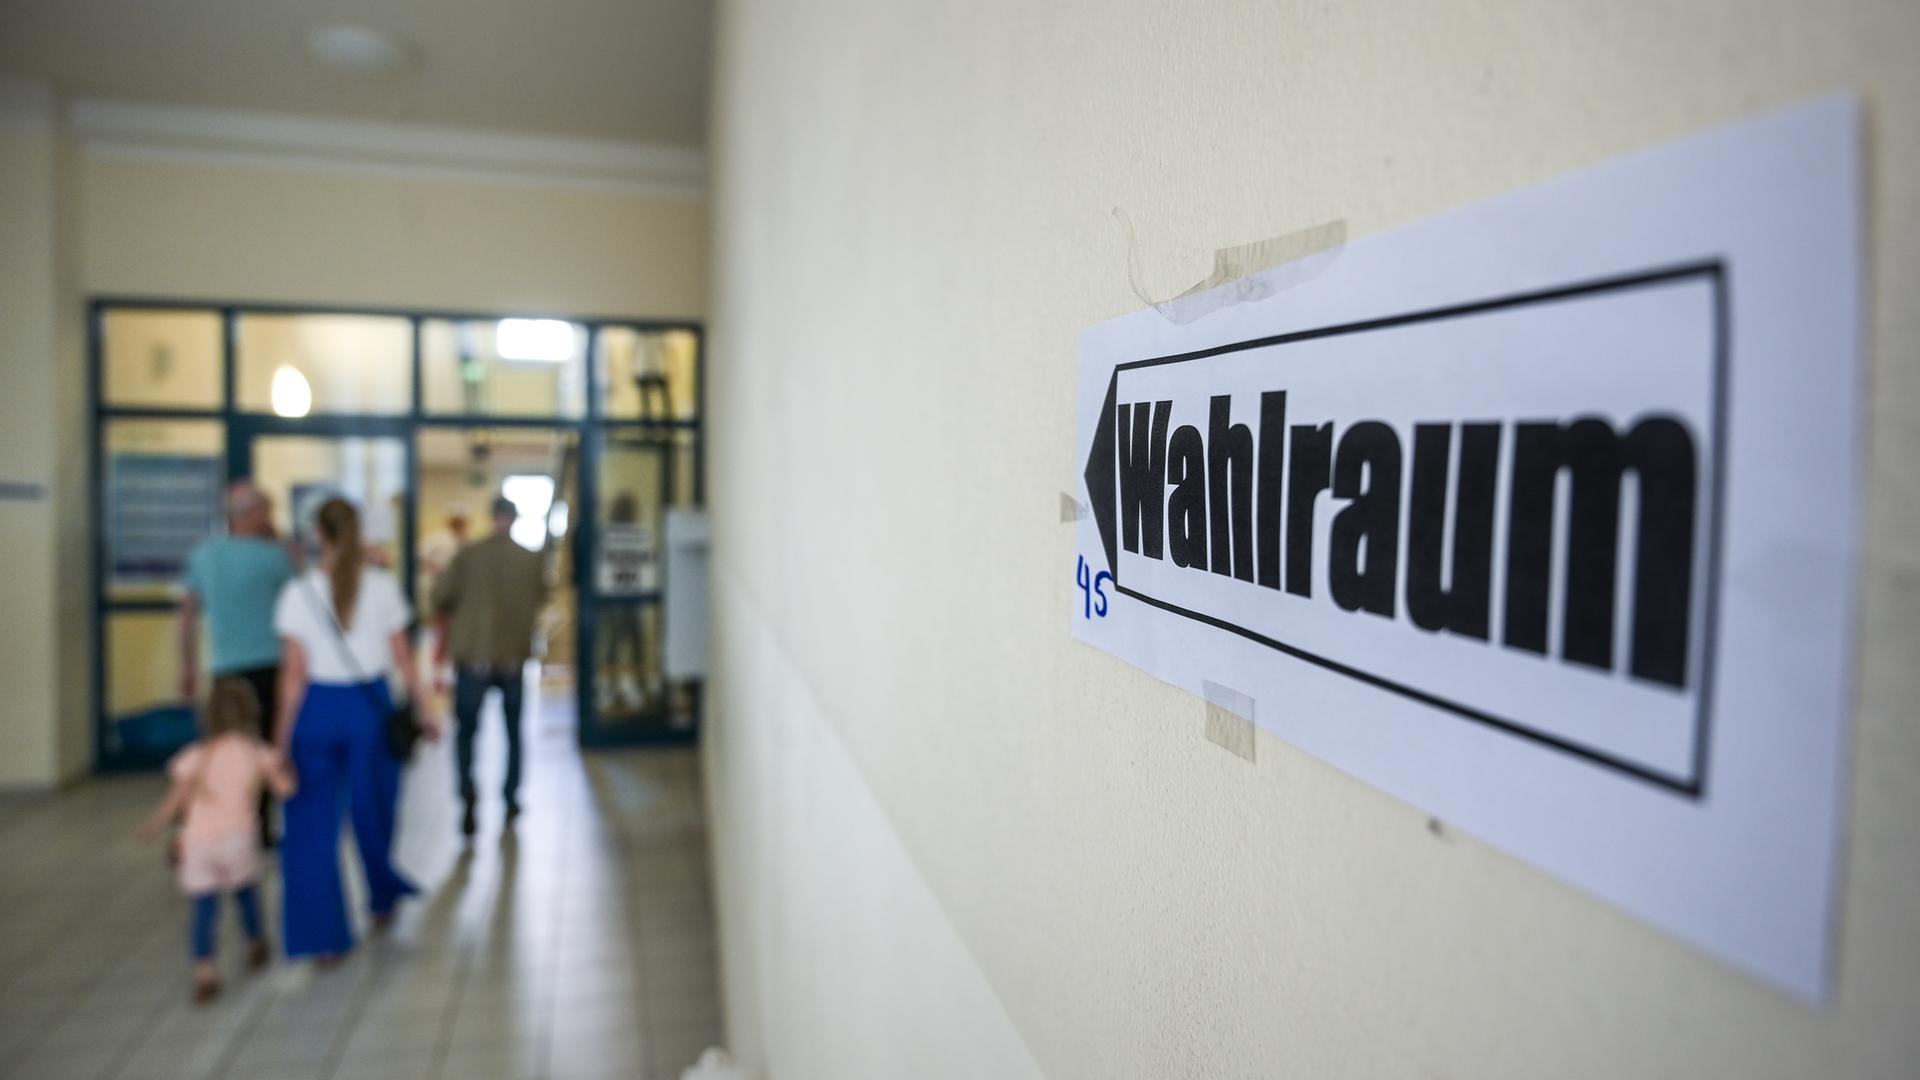 Ein Wegweiser mit der Aufschrift "Wahlraum" führt zum Wahllokal in der Realschule "Otto Dix". Zur Kommunalwahl in Thüringen werden unter anderem Bürgermeister, Landräte, Stadträte und Gemeinderäte neu gewählt.